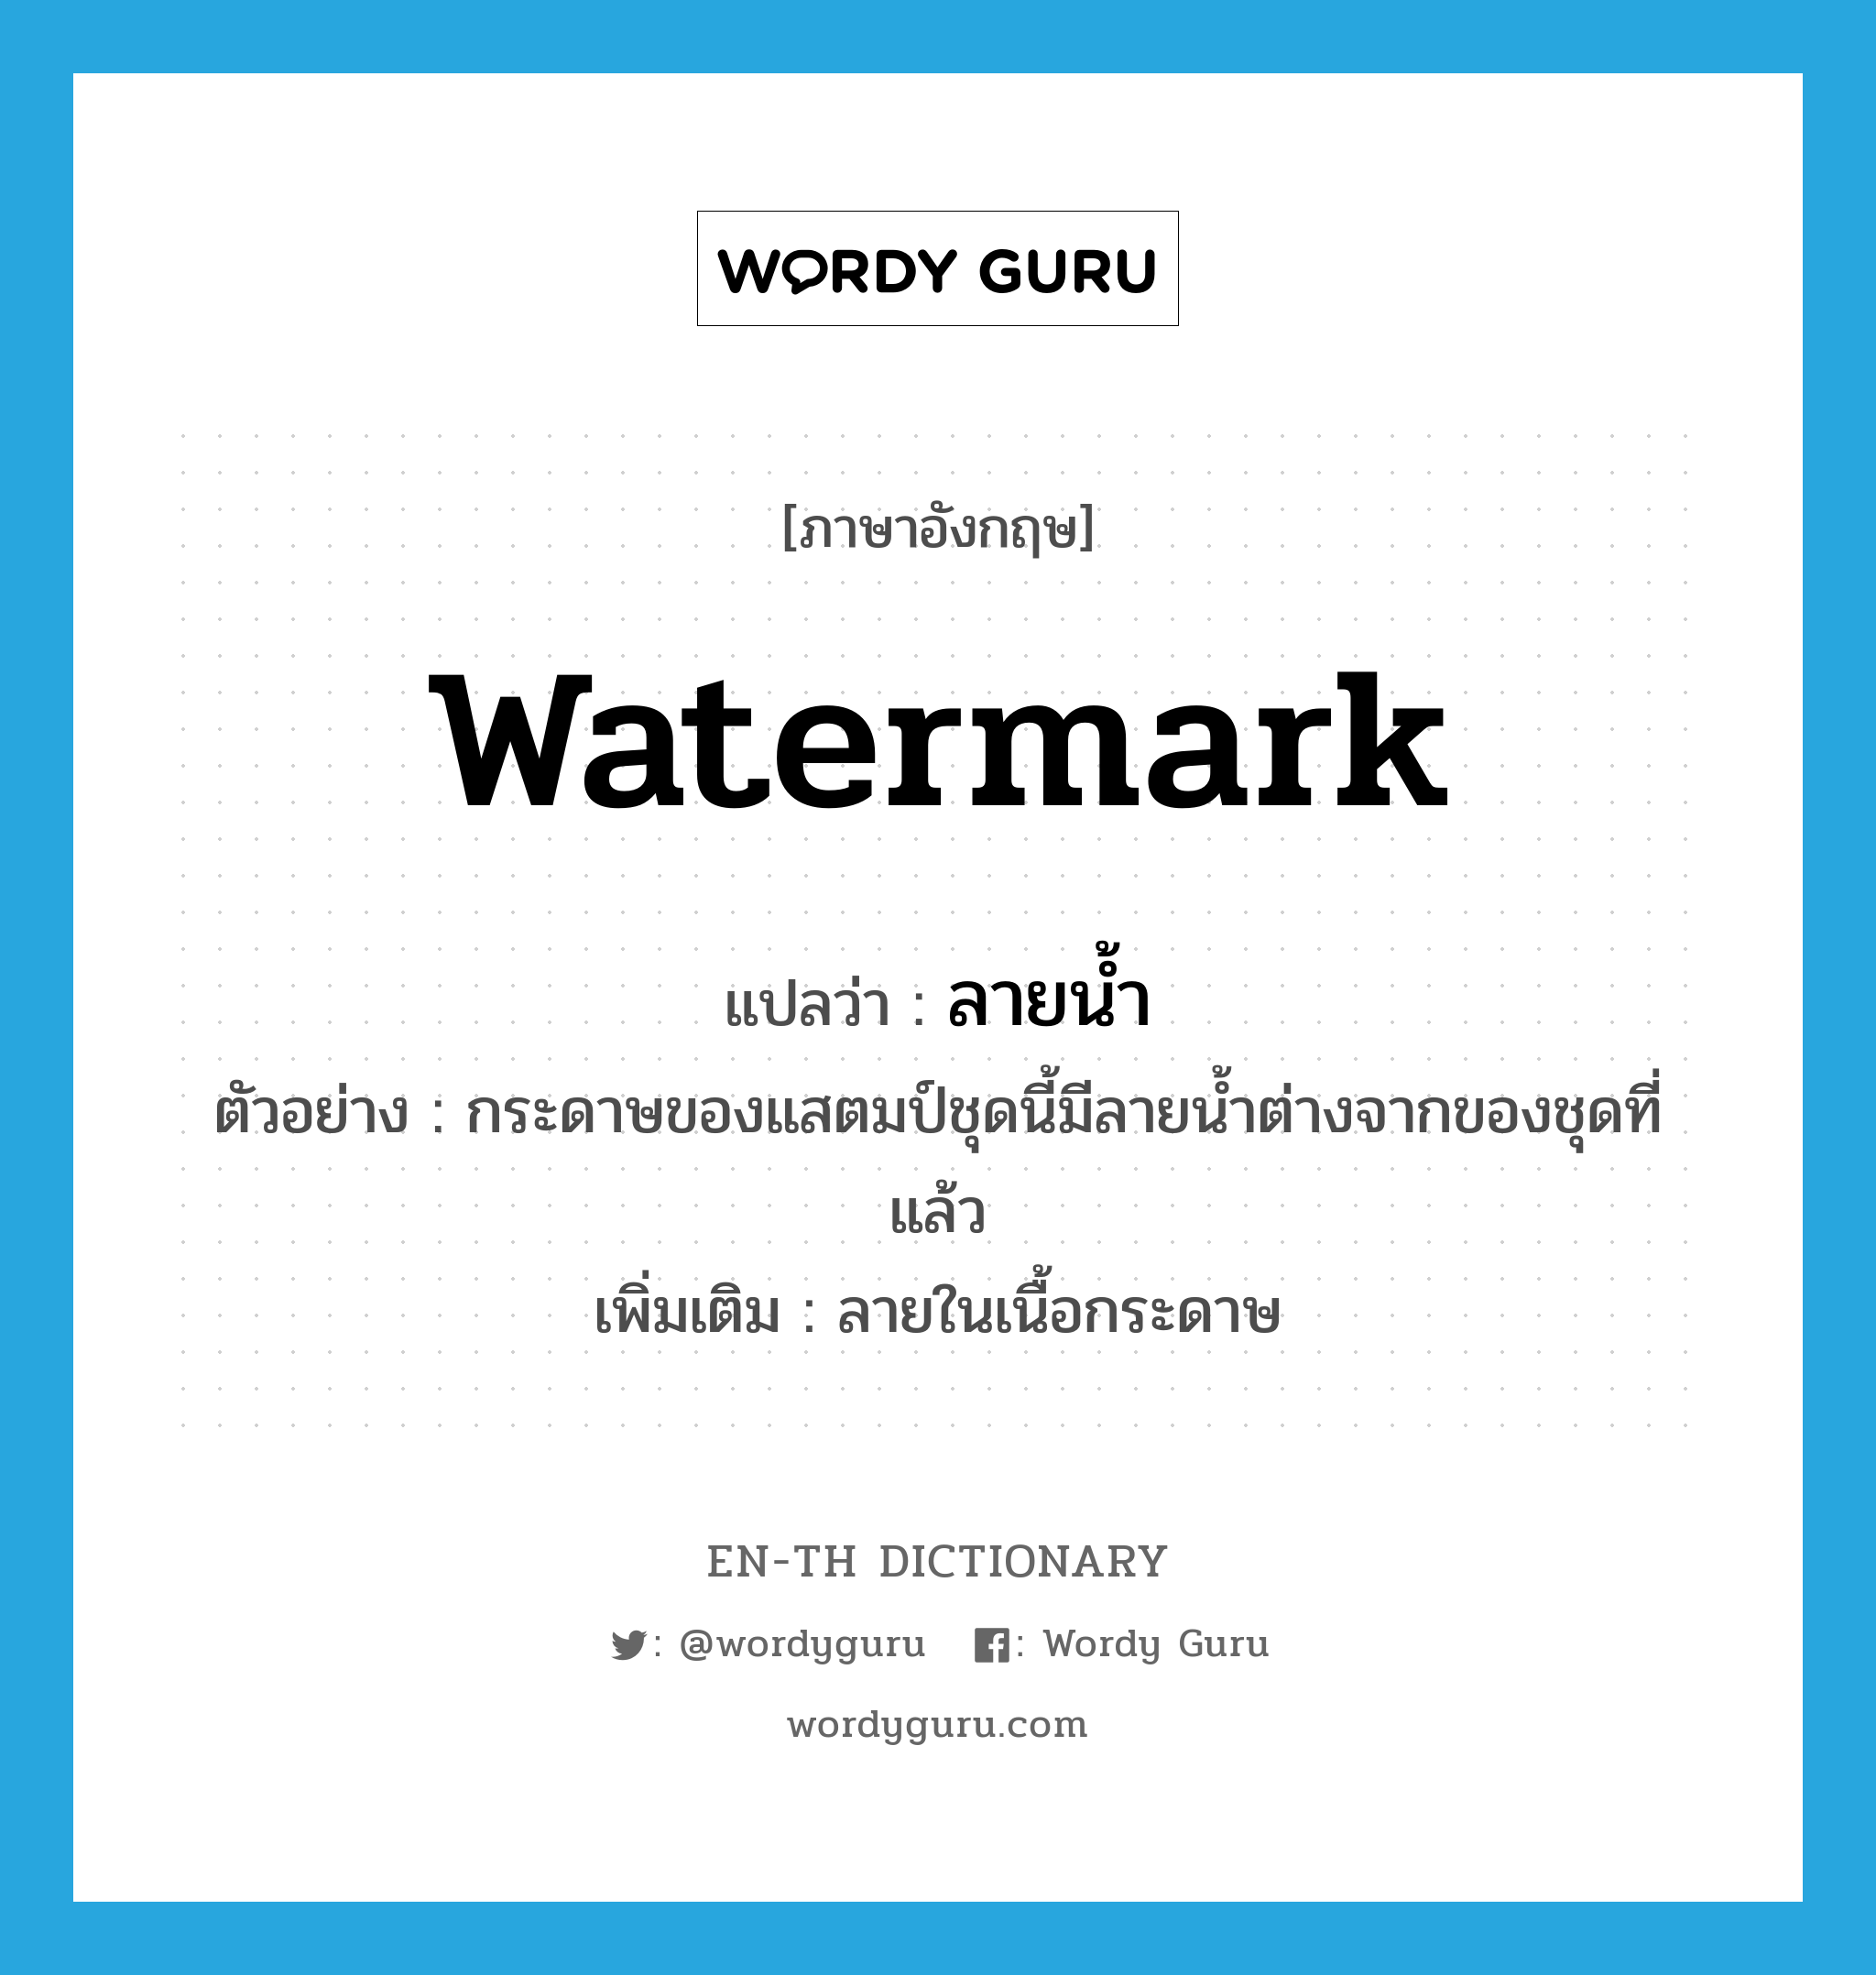 watermark แปลว่า?, คำศัพท์ภาษาอังกฤษ watermark แปลว่า ลายน้ำ ประเภท N ตัวอย่าง กระดาษของแสตมป์ชุดนี้มีลายน้ำต่างจากของชุดที่แล้ว เพิ่มเติม ลายในเนื้อกระดาษ หมวด N